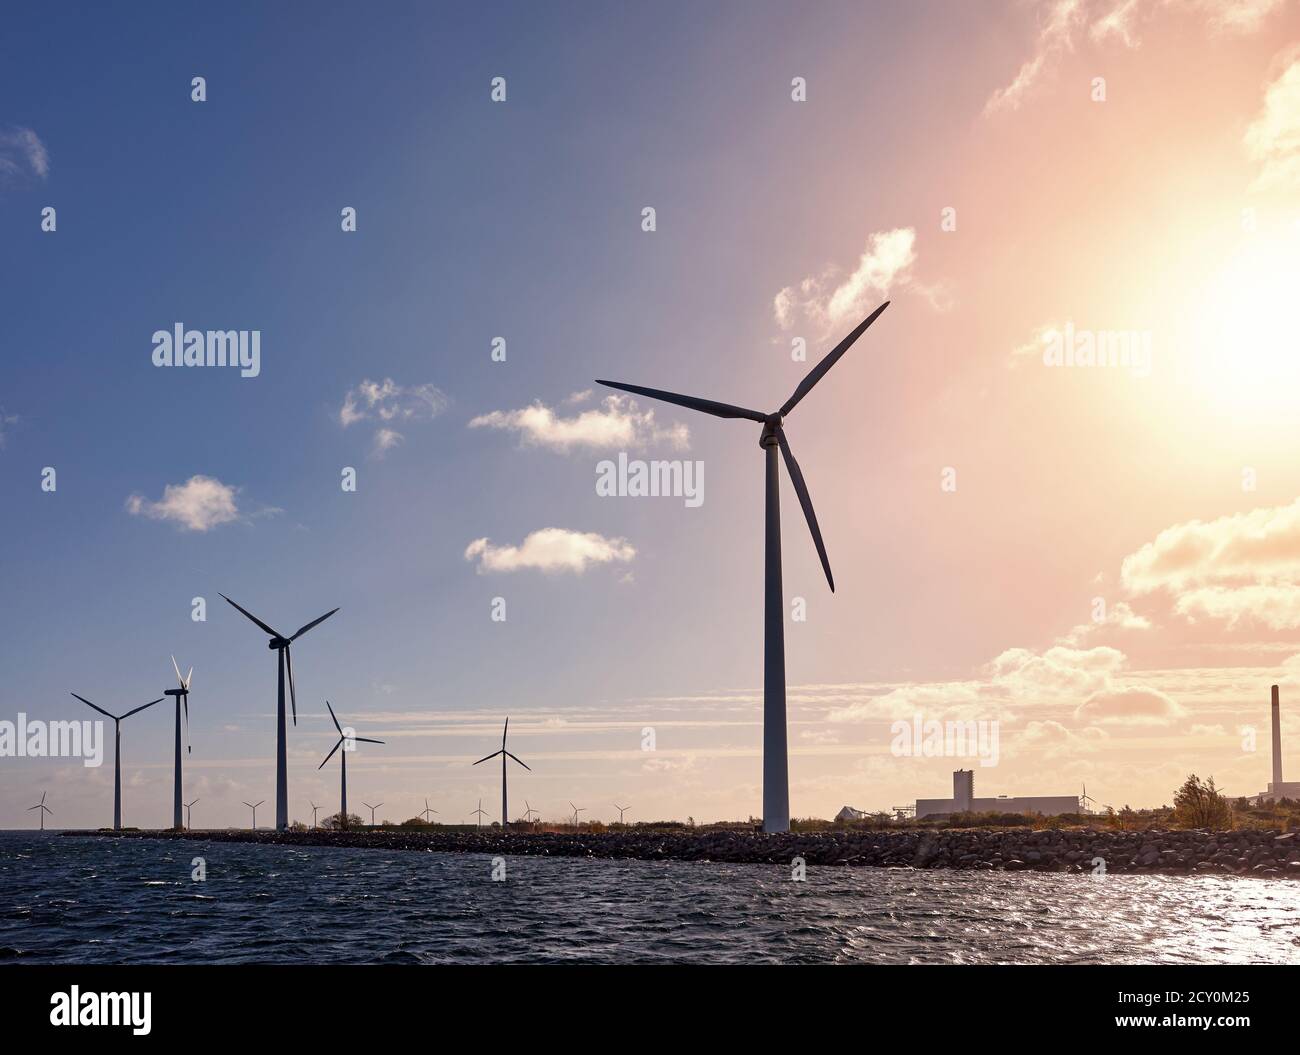 Wind turbines on the coast at sunset, Denmark Stock Photo